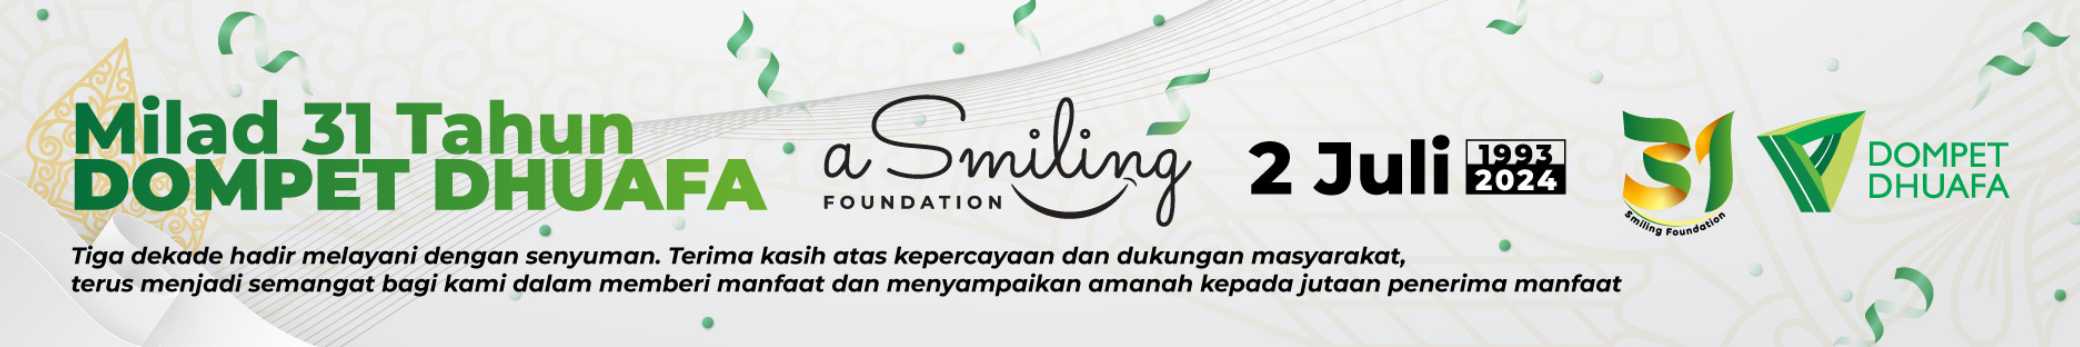 Milad ke-31 Dompet Dhuafa, A Smiling Foundation